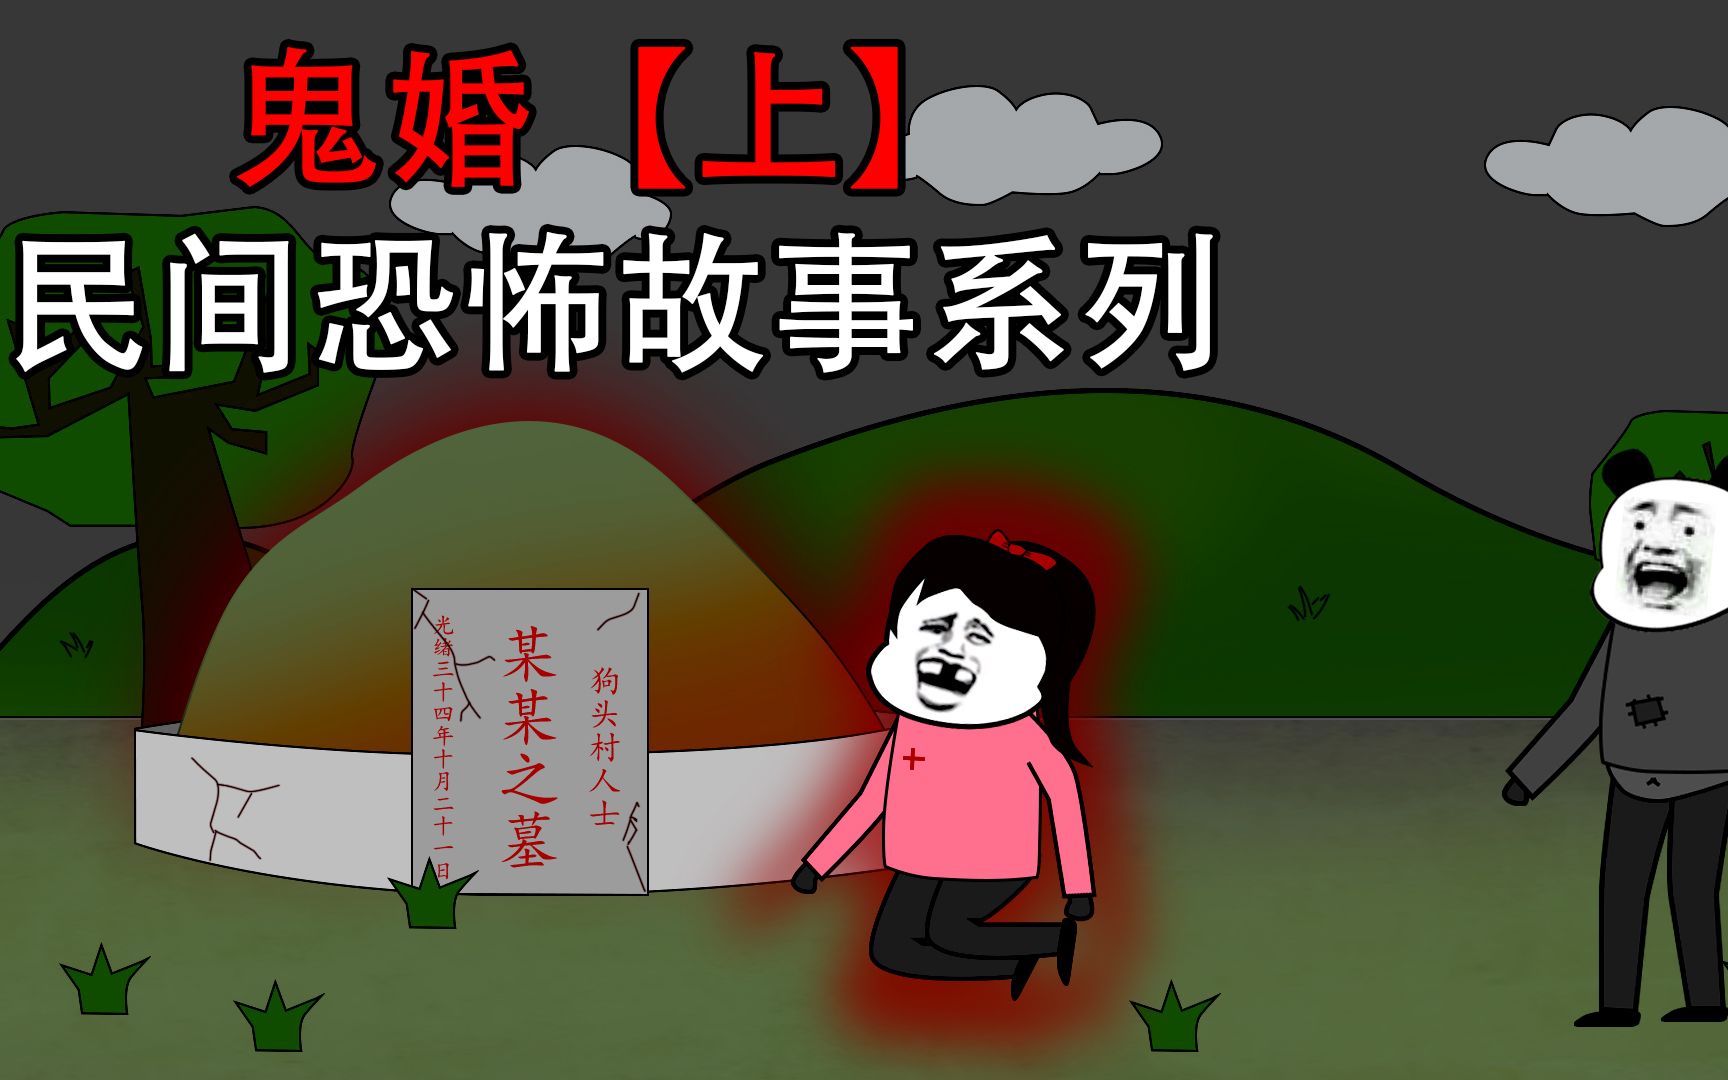 沙雕恐怖动画:小芳和神秘人出去,发现时竟在跪在坟前傻笑